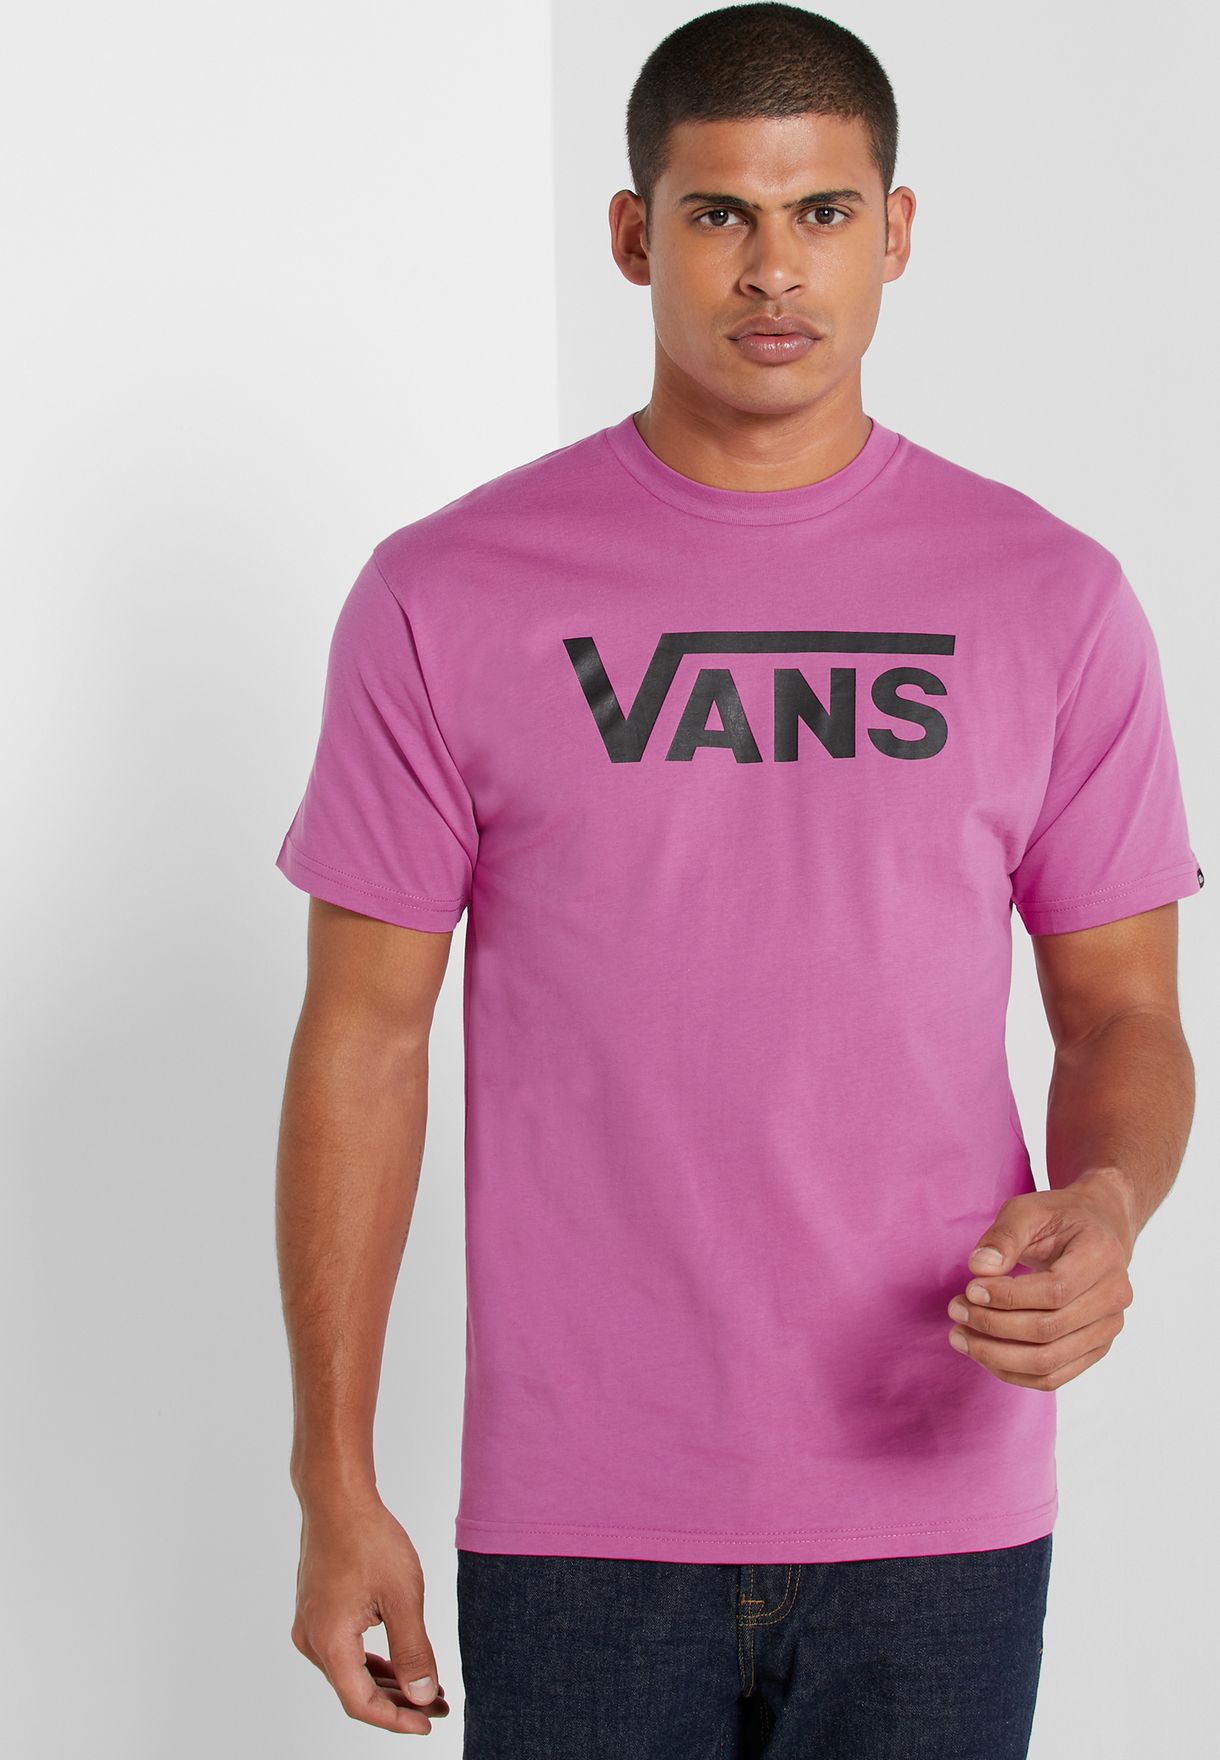 vans pink t shirt mens